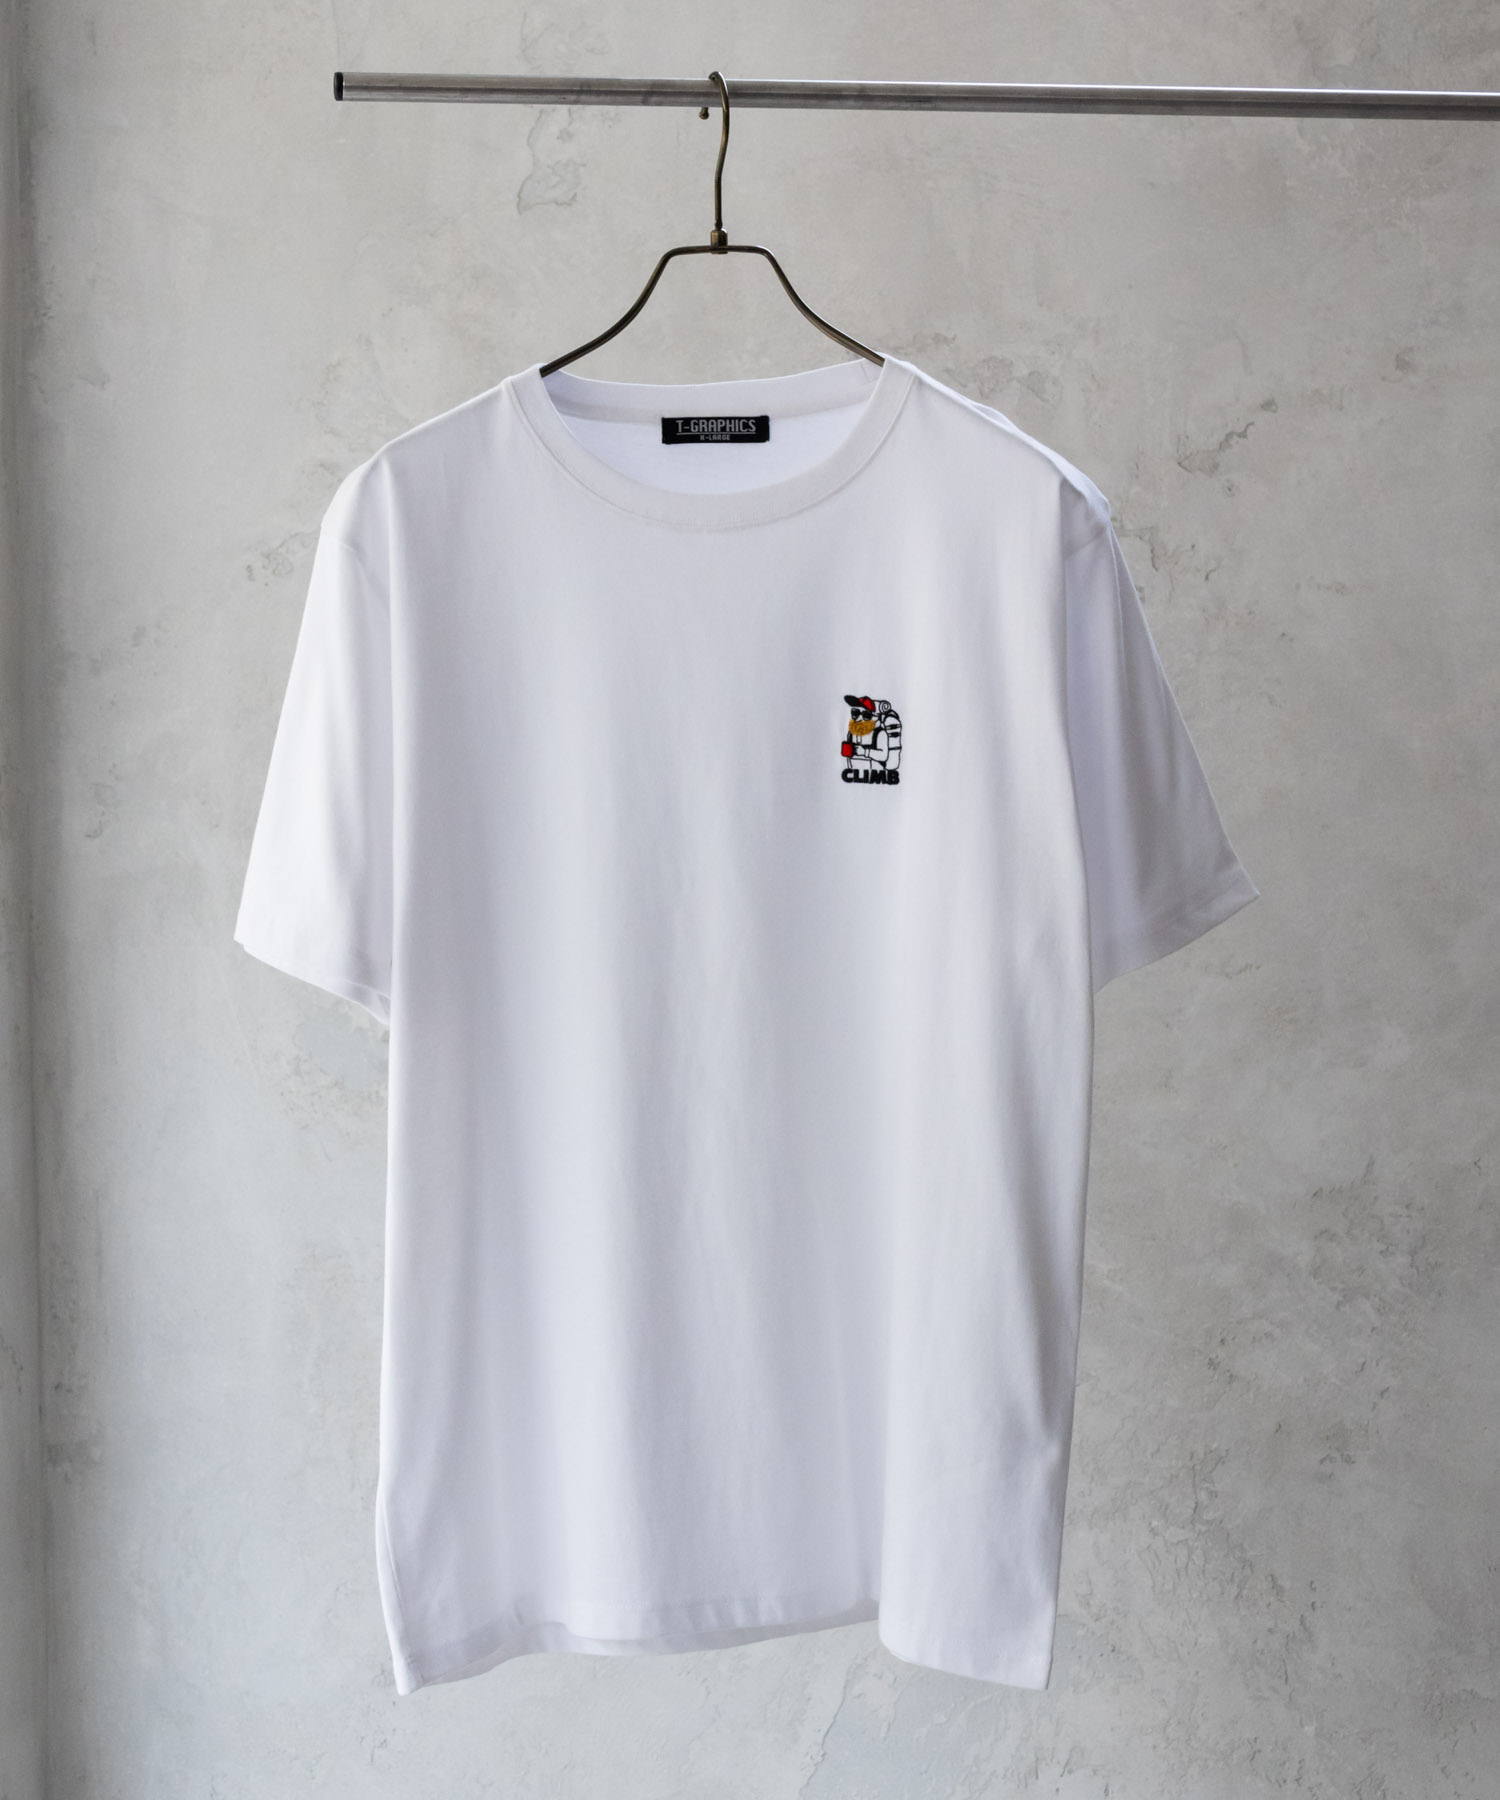 Tシャツ メンズ ワンポイント サガラ刺繍 クルーネック ネコポス対応 半袖 カットソー トップス